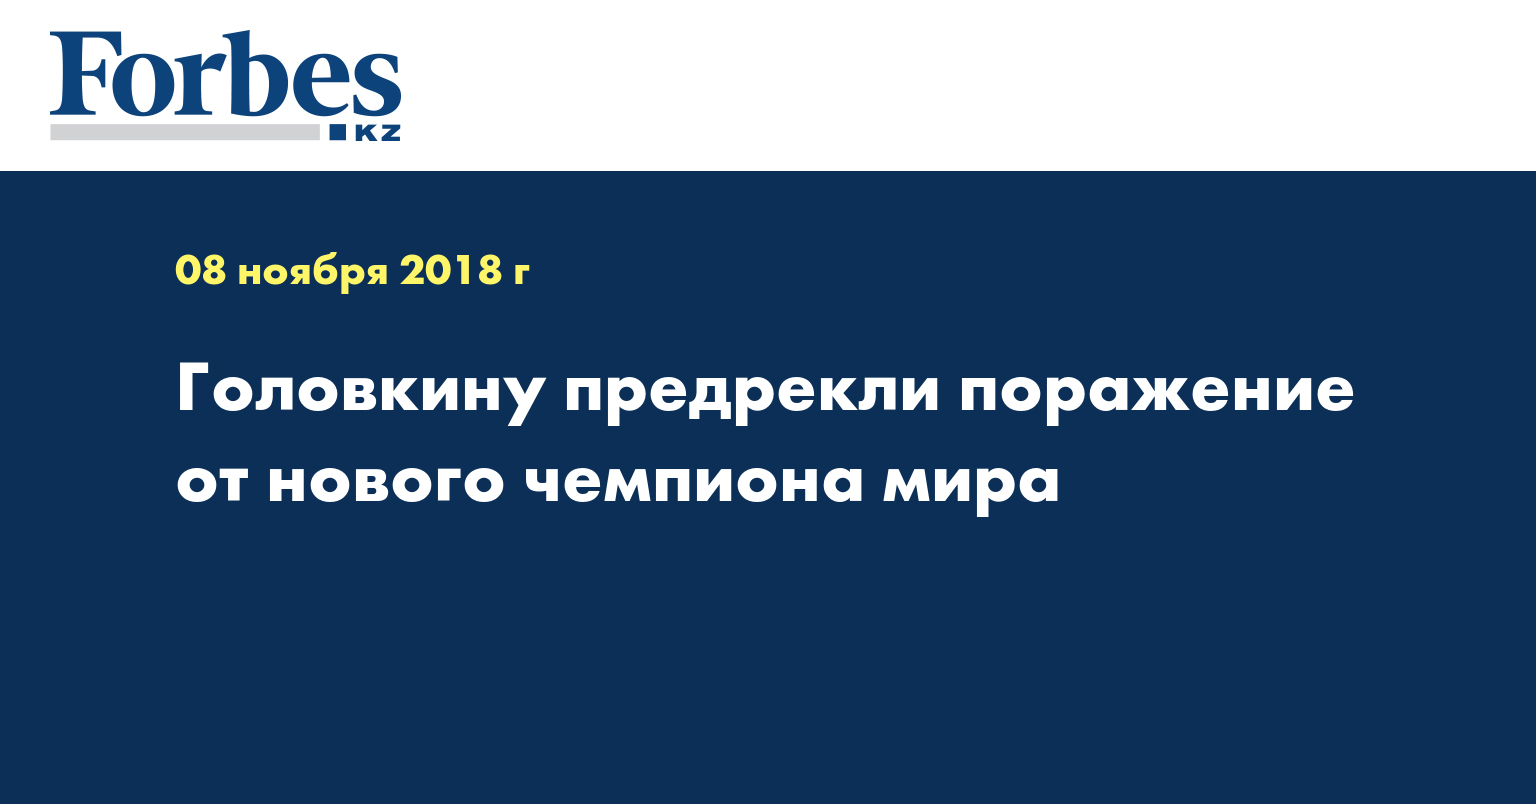 Головкину предрекли поражение от нового чемпиона мира